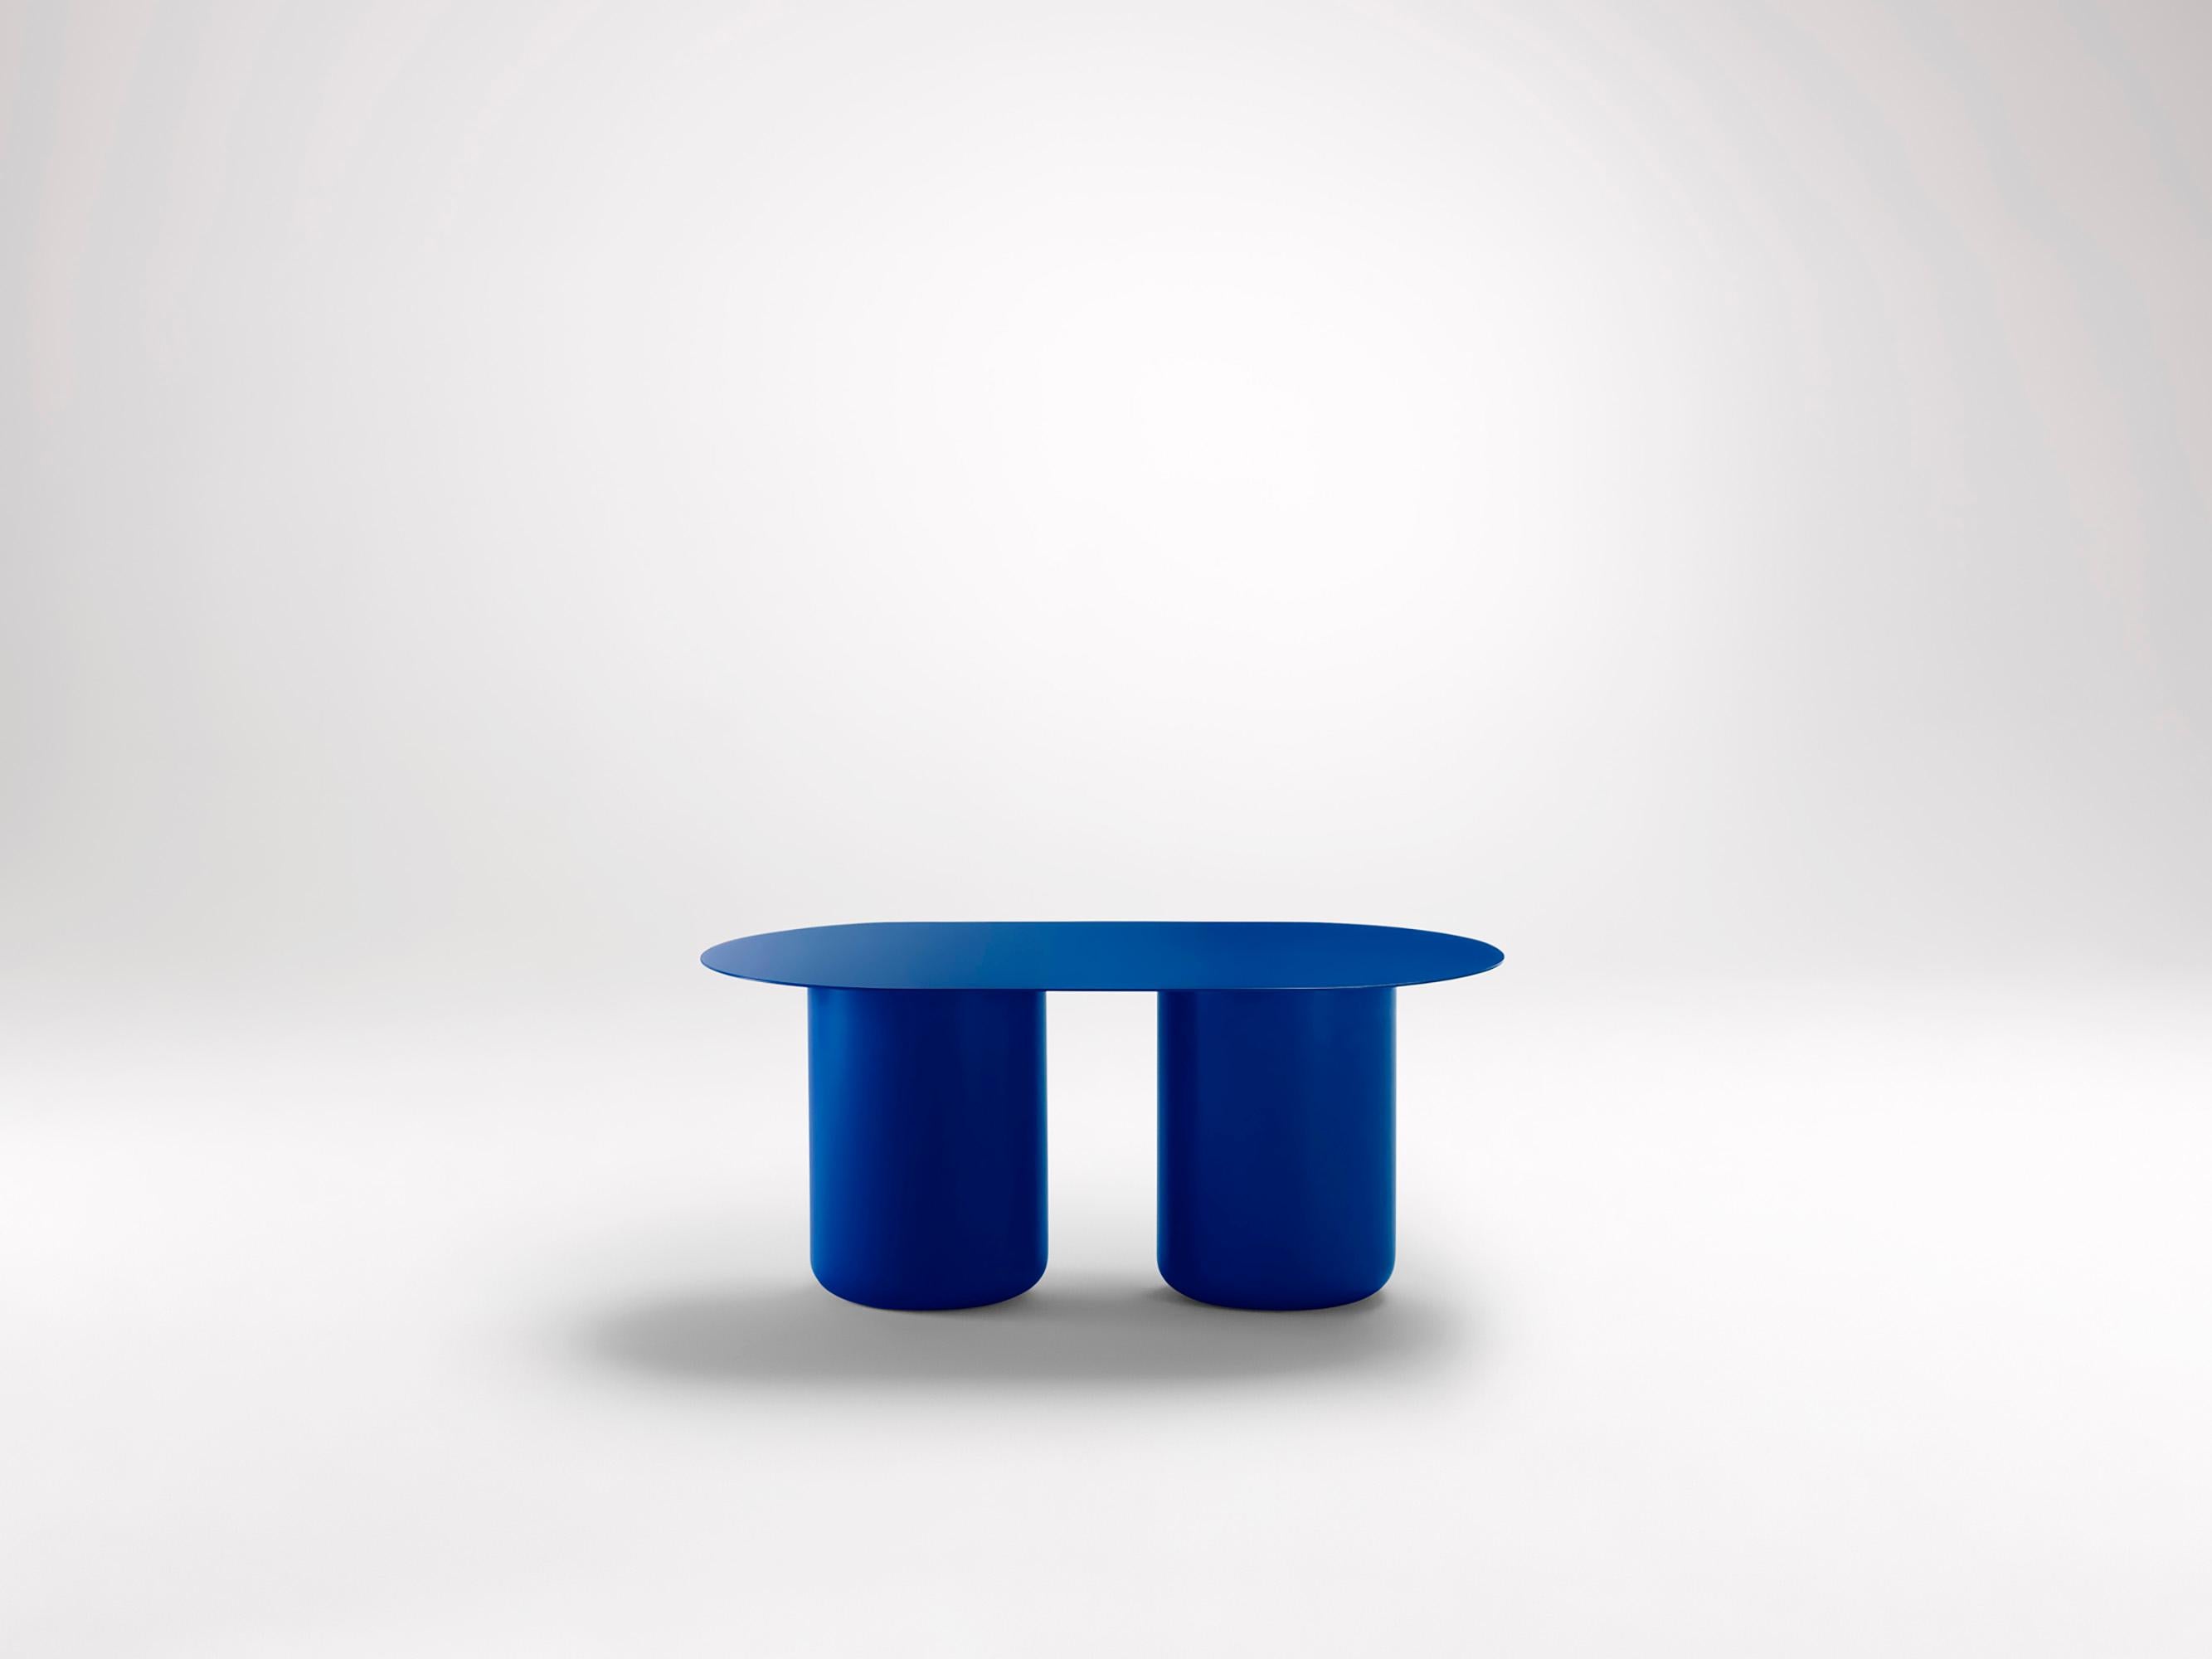 Vivid Blue Tisch 02 von Coco Flip
Abmessungen: T 48 / 85 x H 32 / 36 / 40 / 42 cm
MATERIALIEN: Baustahl, pulverbeschichtet mit Zinkgrundierung. 
Gewicht: 20 kg

Coco Flip ist ein Studio für Möbel- und Beleuchtungsdesign in Melbourne, das von uns,